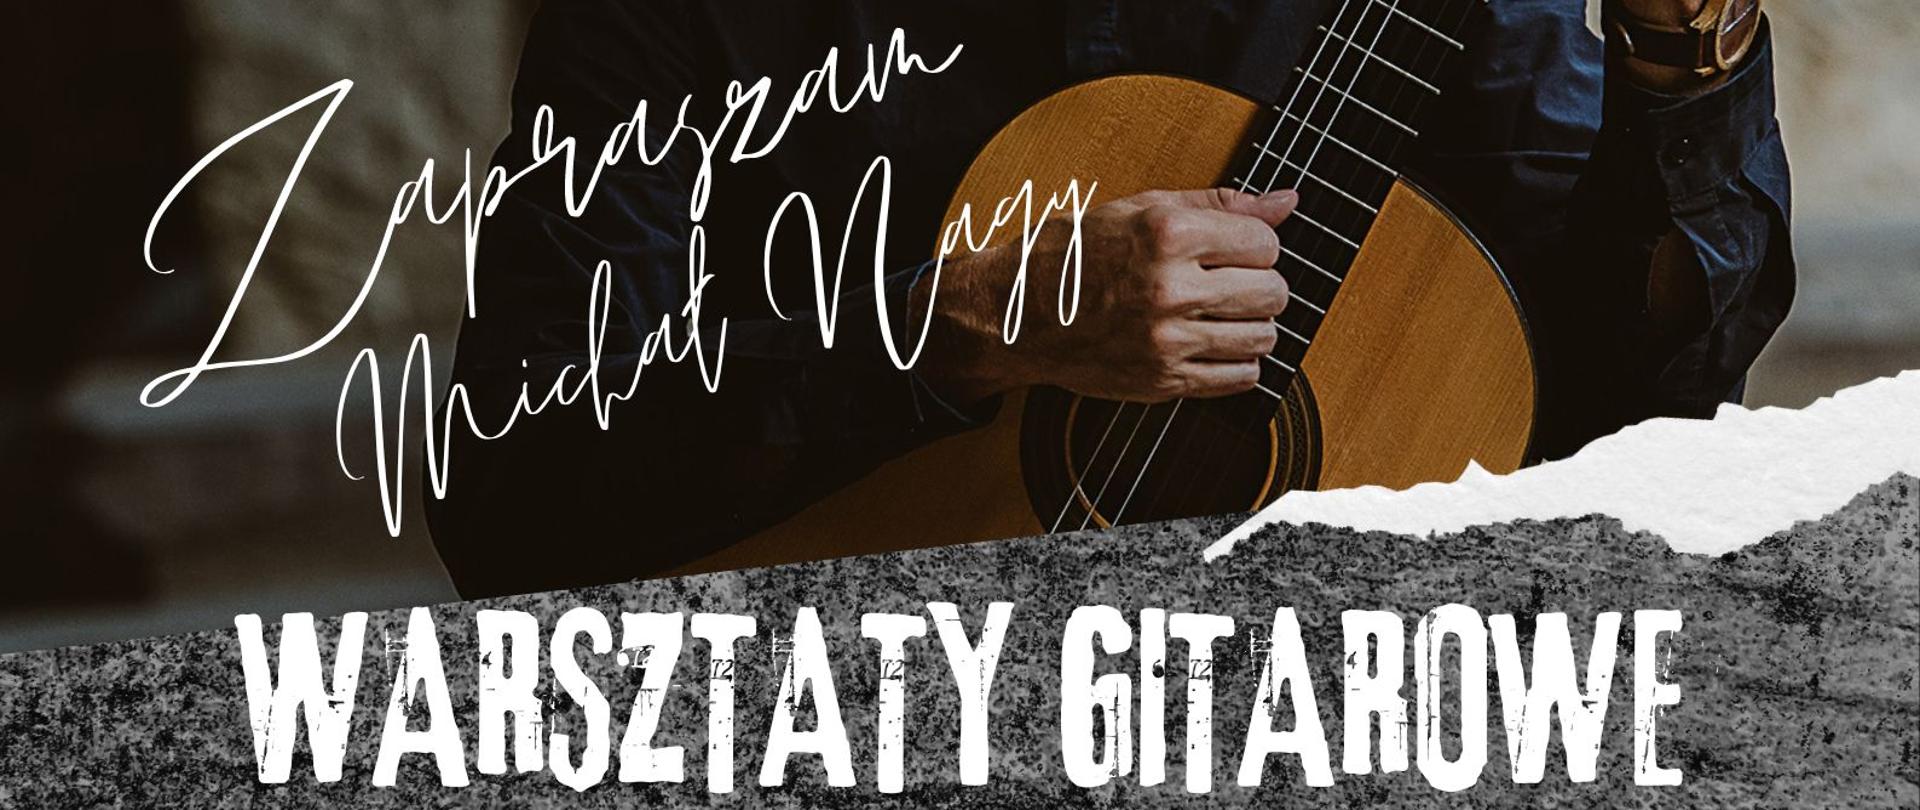 Plakat przedstawia artystę, gitarzystę prof. Michała Nagy oraz informacje o warsztatach gitarowych